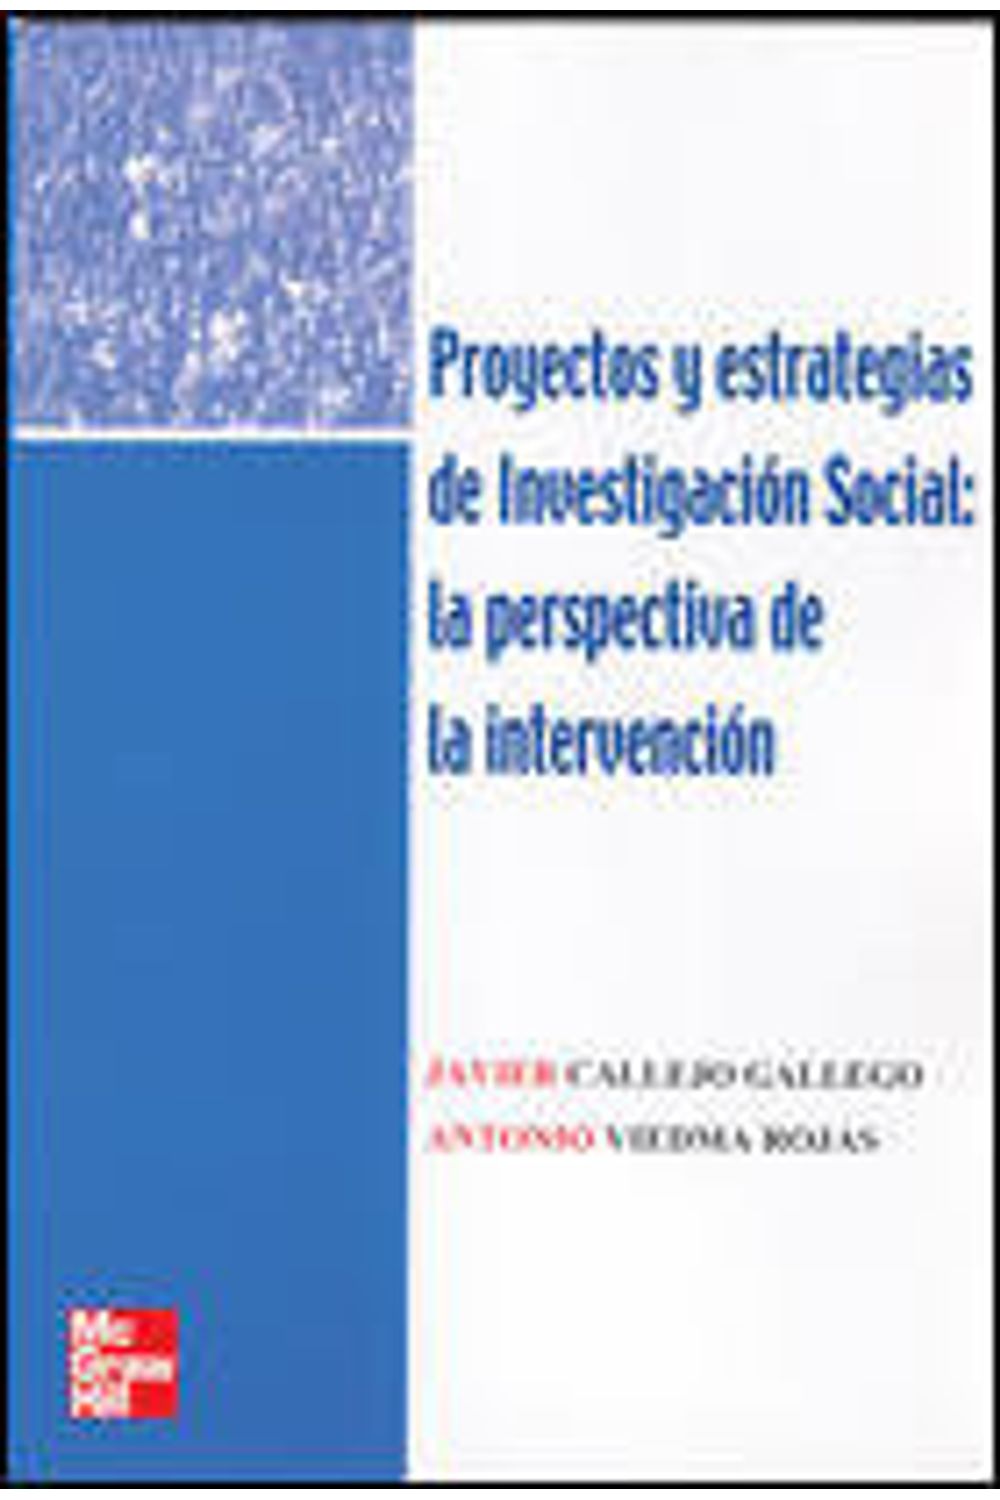 Proyectos Estrategias Investigacion Social 2005